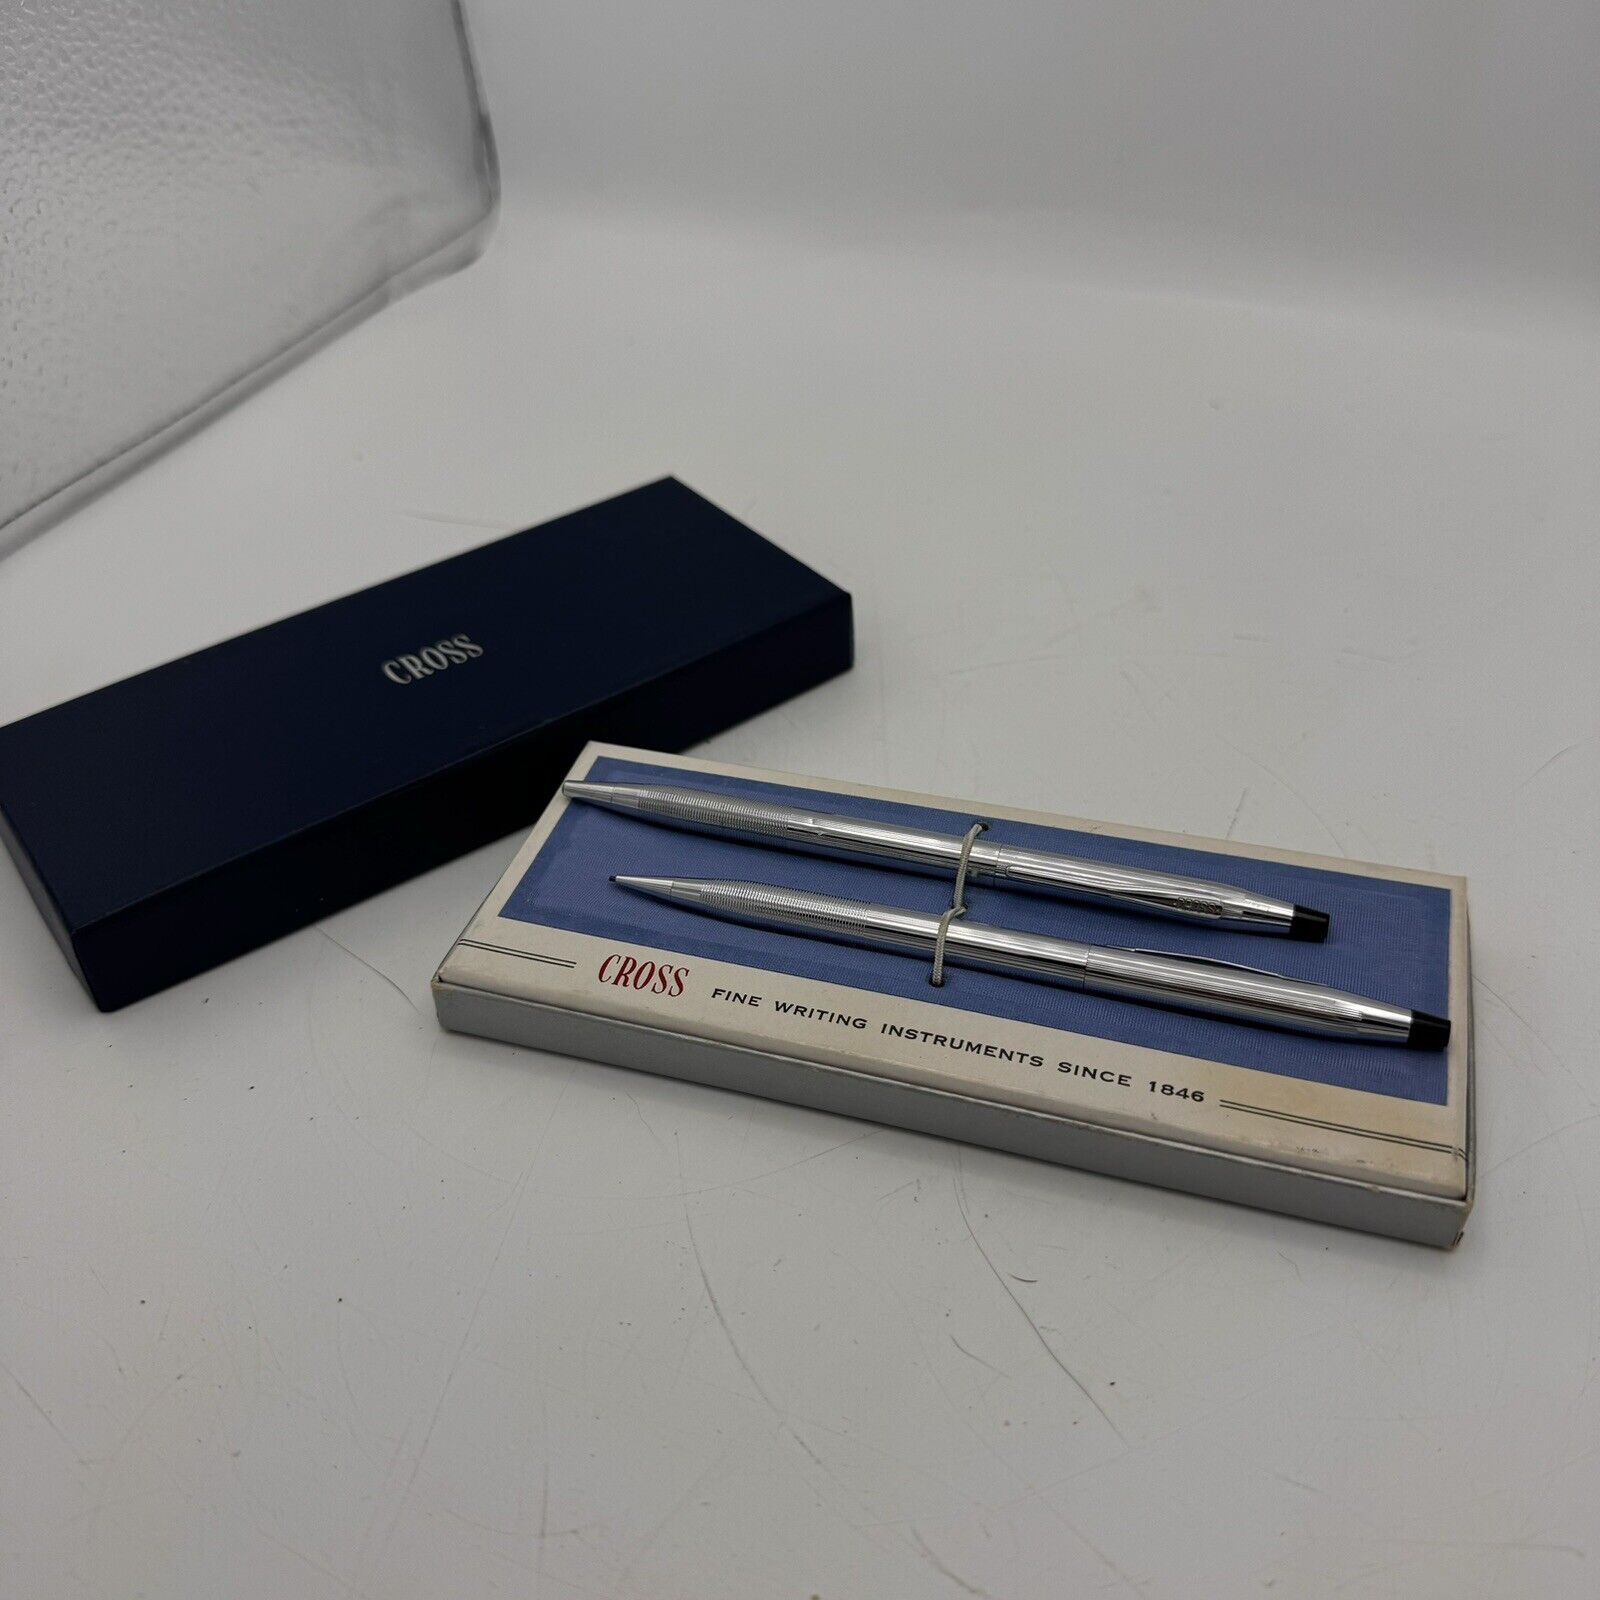 Cross Lustrous Chrome Silver Pen And Pencil Set #3501 W/Box VINTAGE